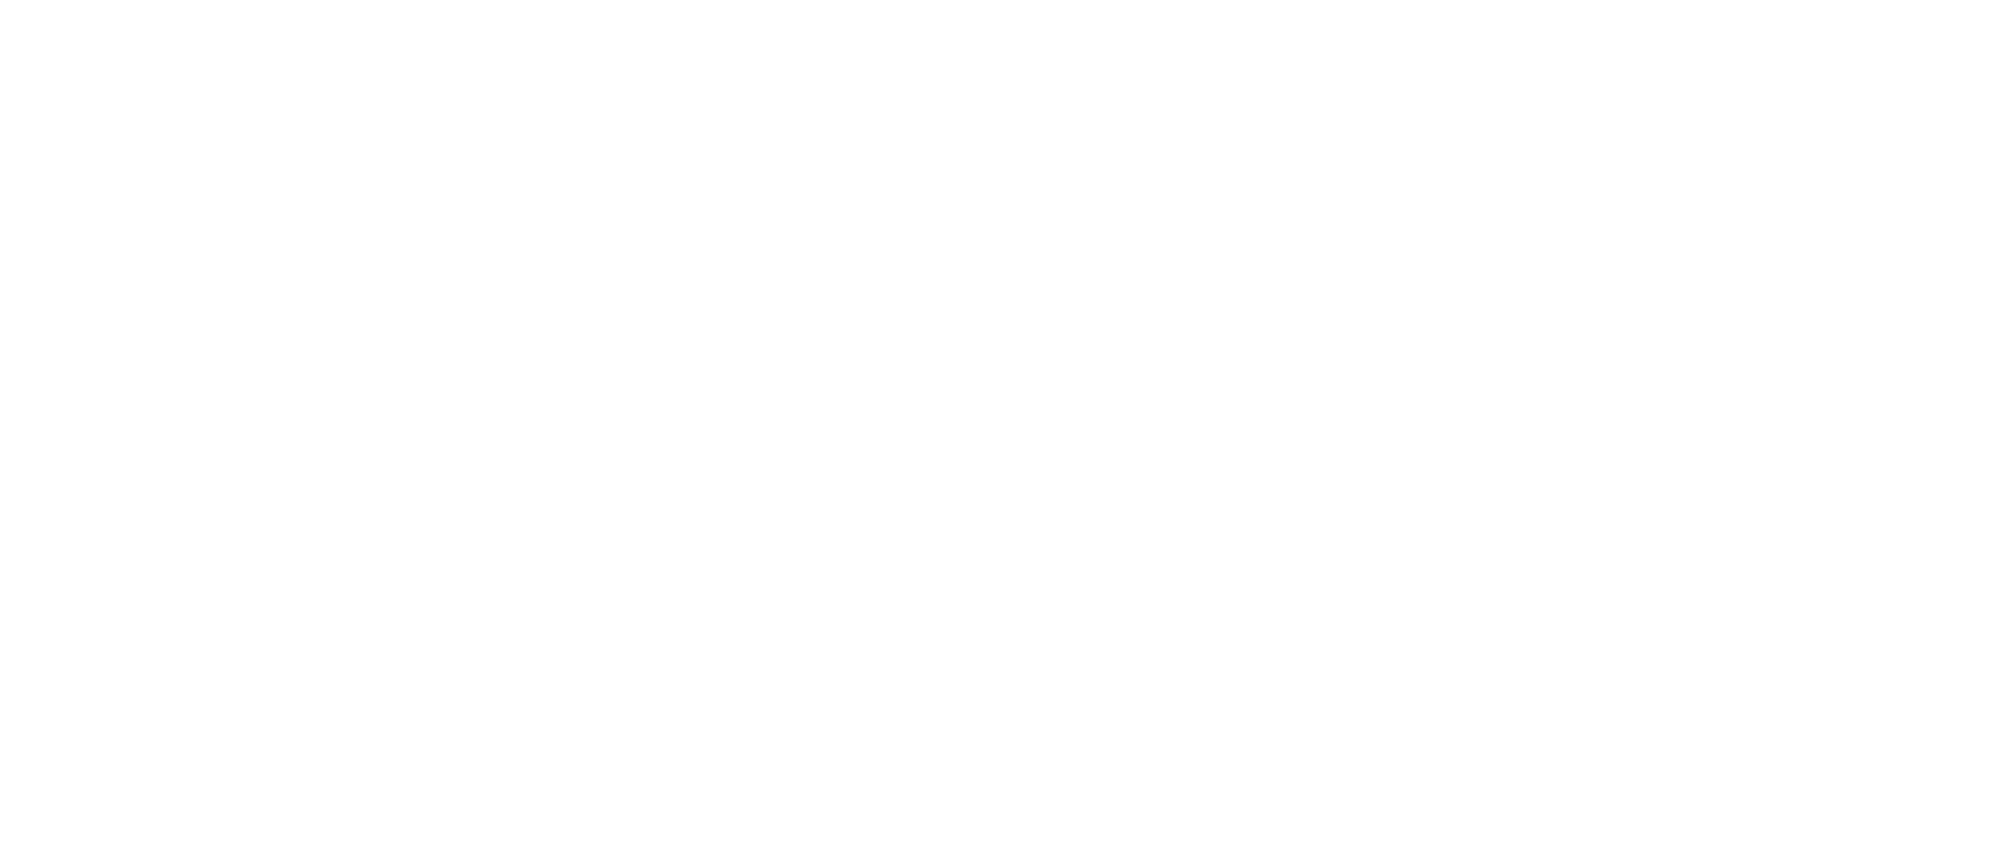 logomarca blanco con slogan Xornadas de videoxogo e literatura